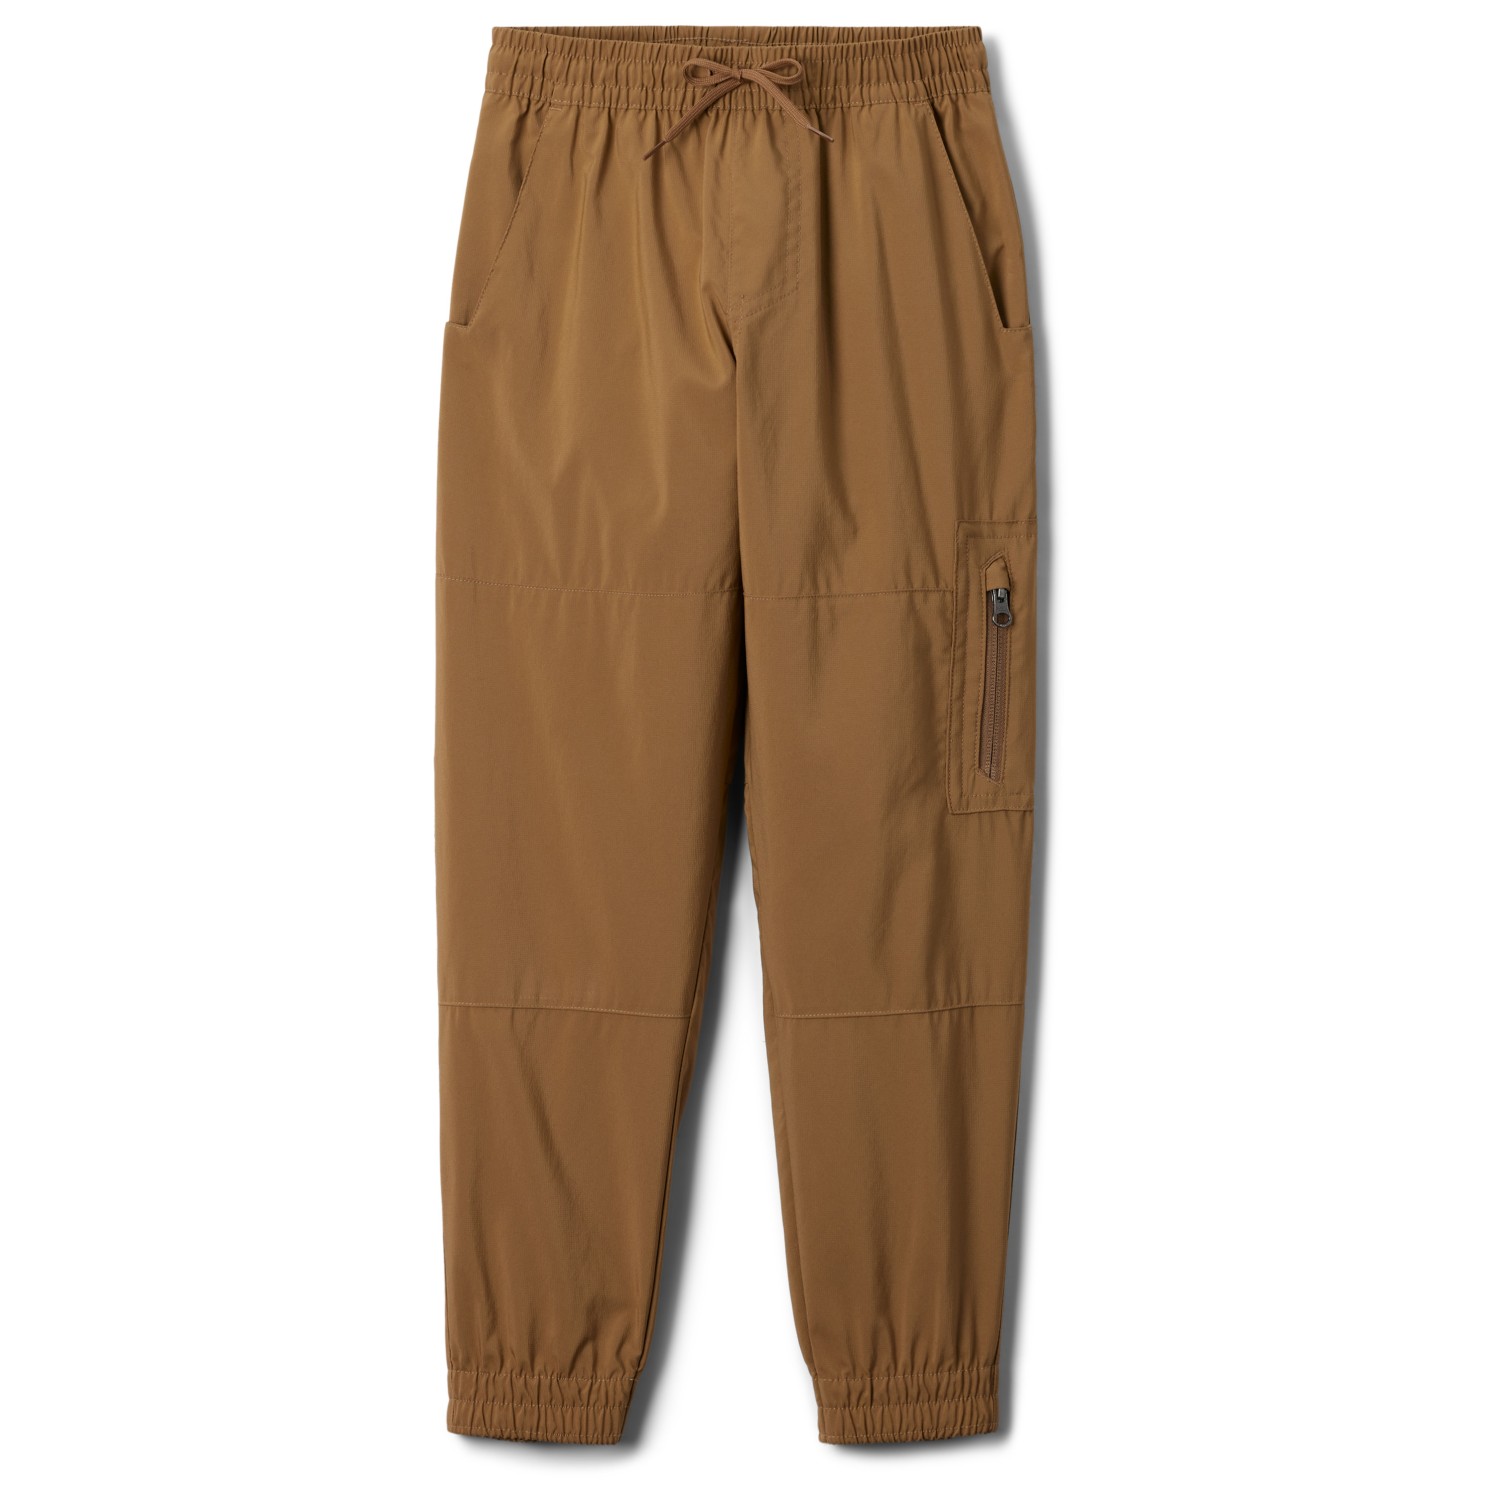 Трекинговые брюки Columbia Kid's Silver Ridge Utility Cargo Pant, цвет Delta брюки карго nike air jordan utility pant песочный